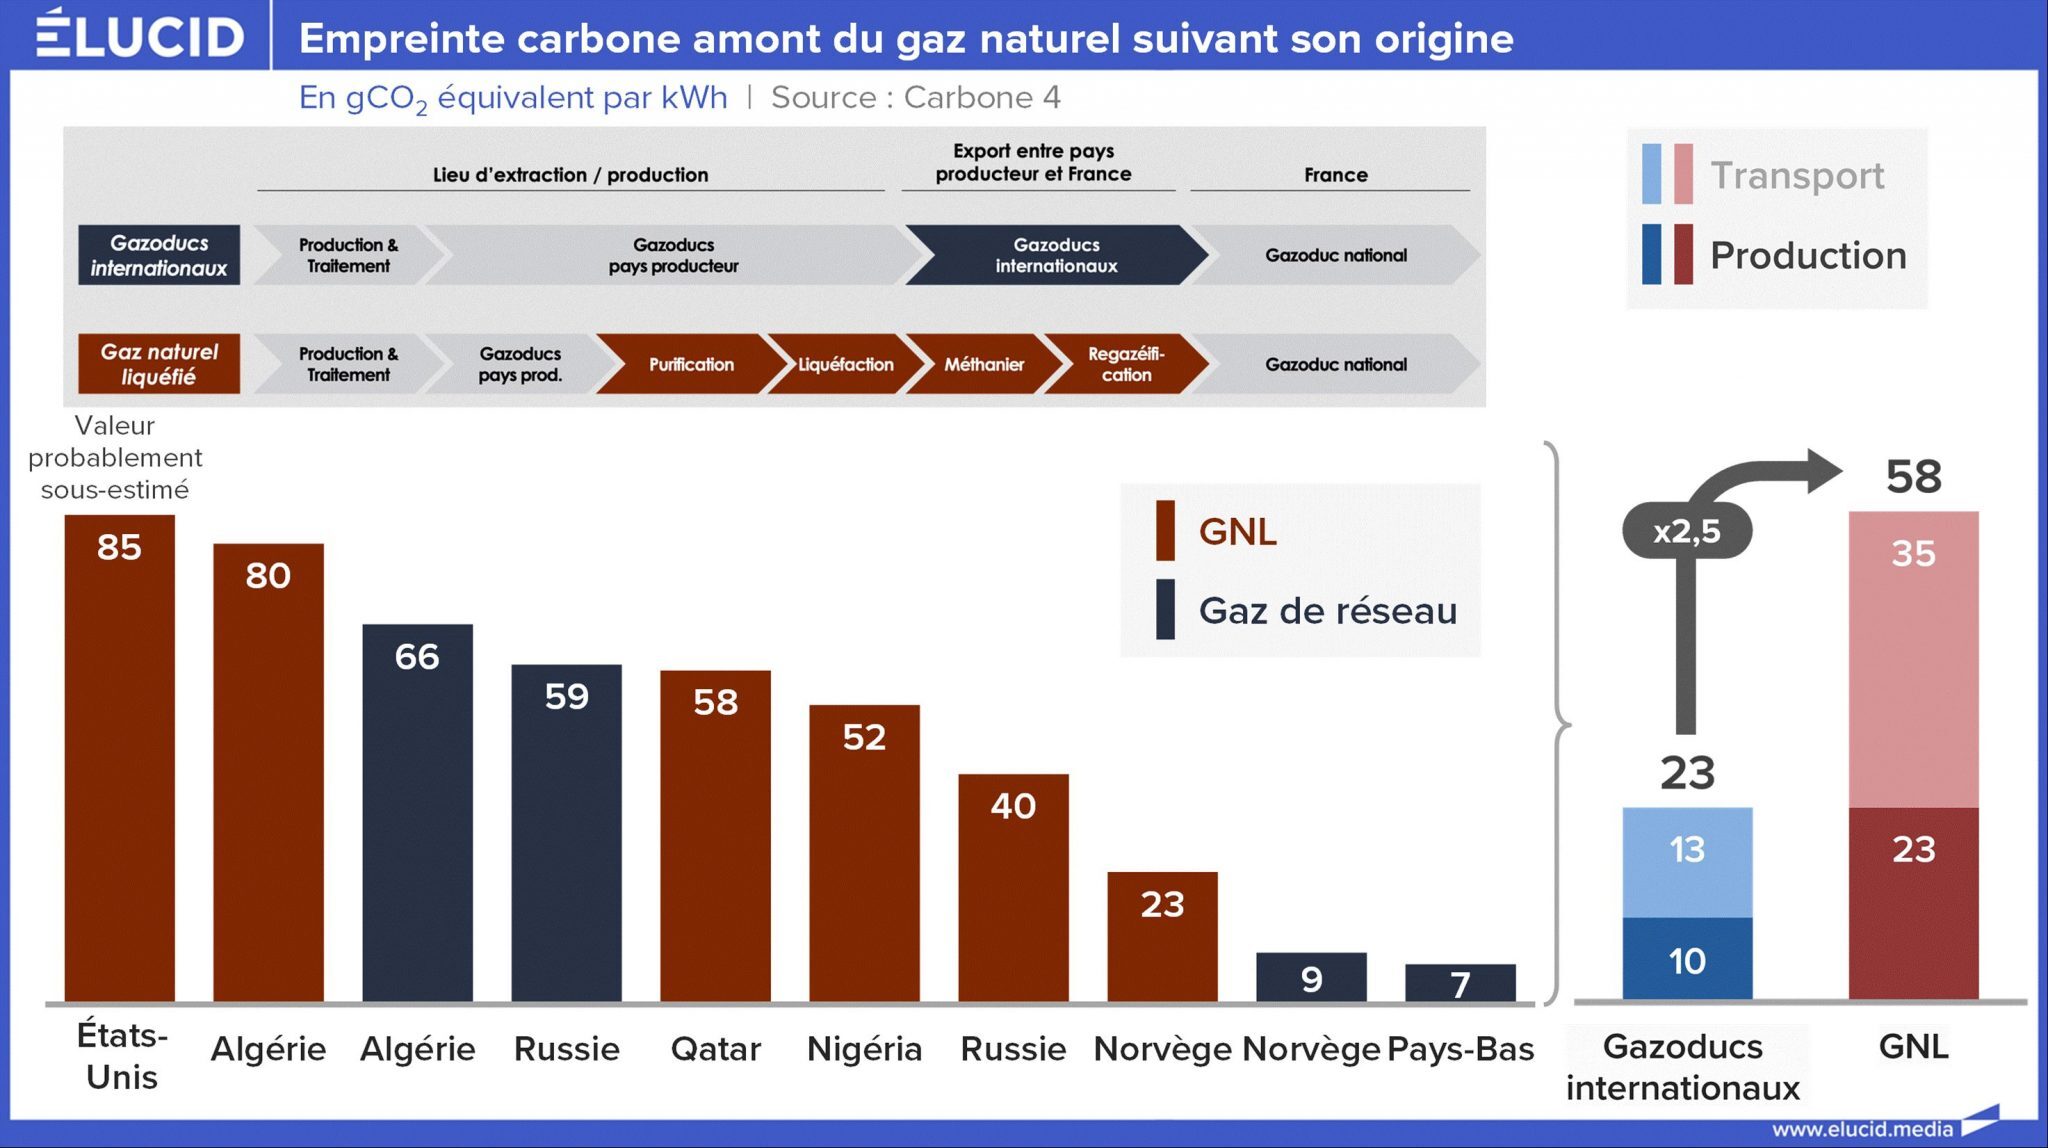 empreinte carbone amont gaz naturel suivant origine